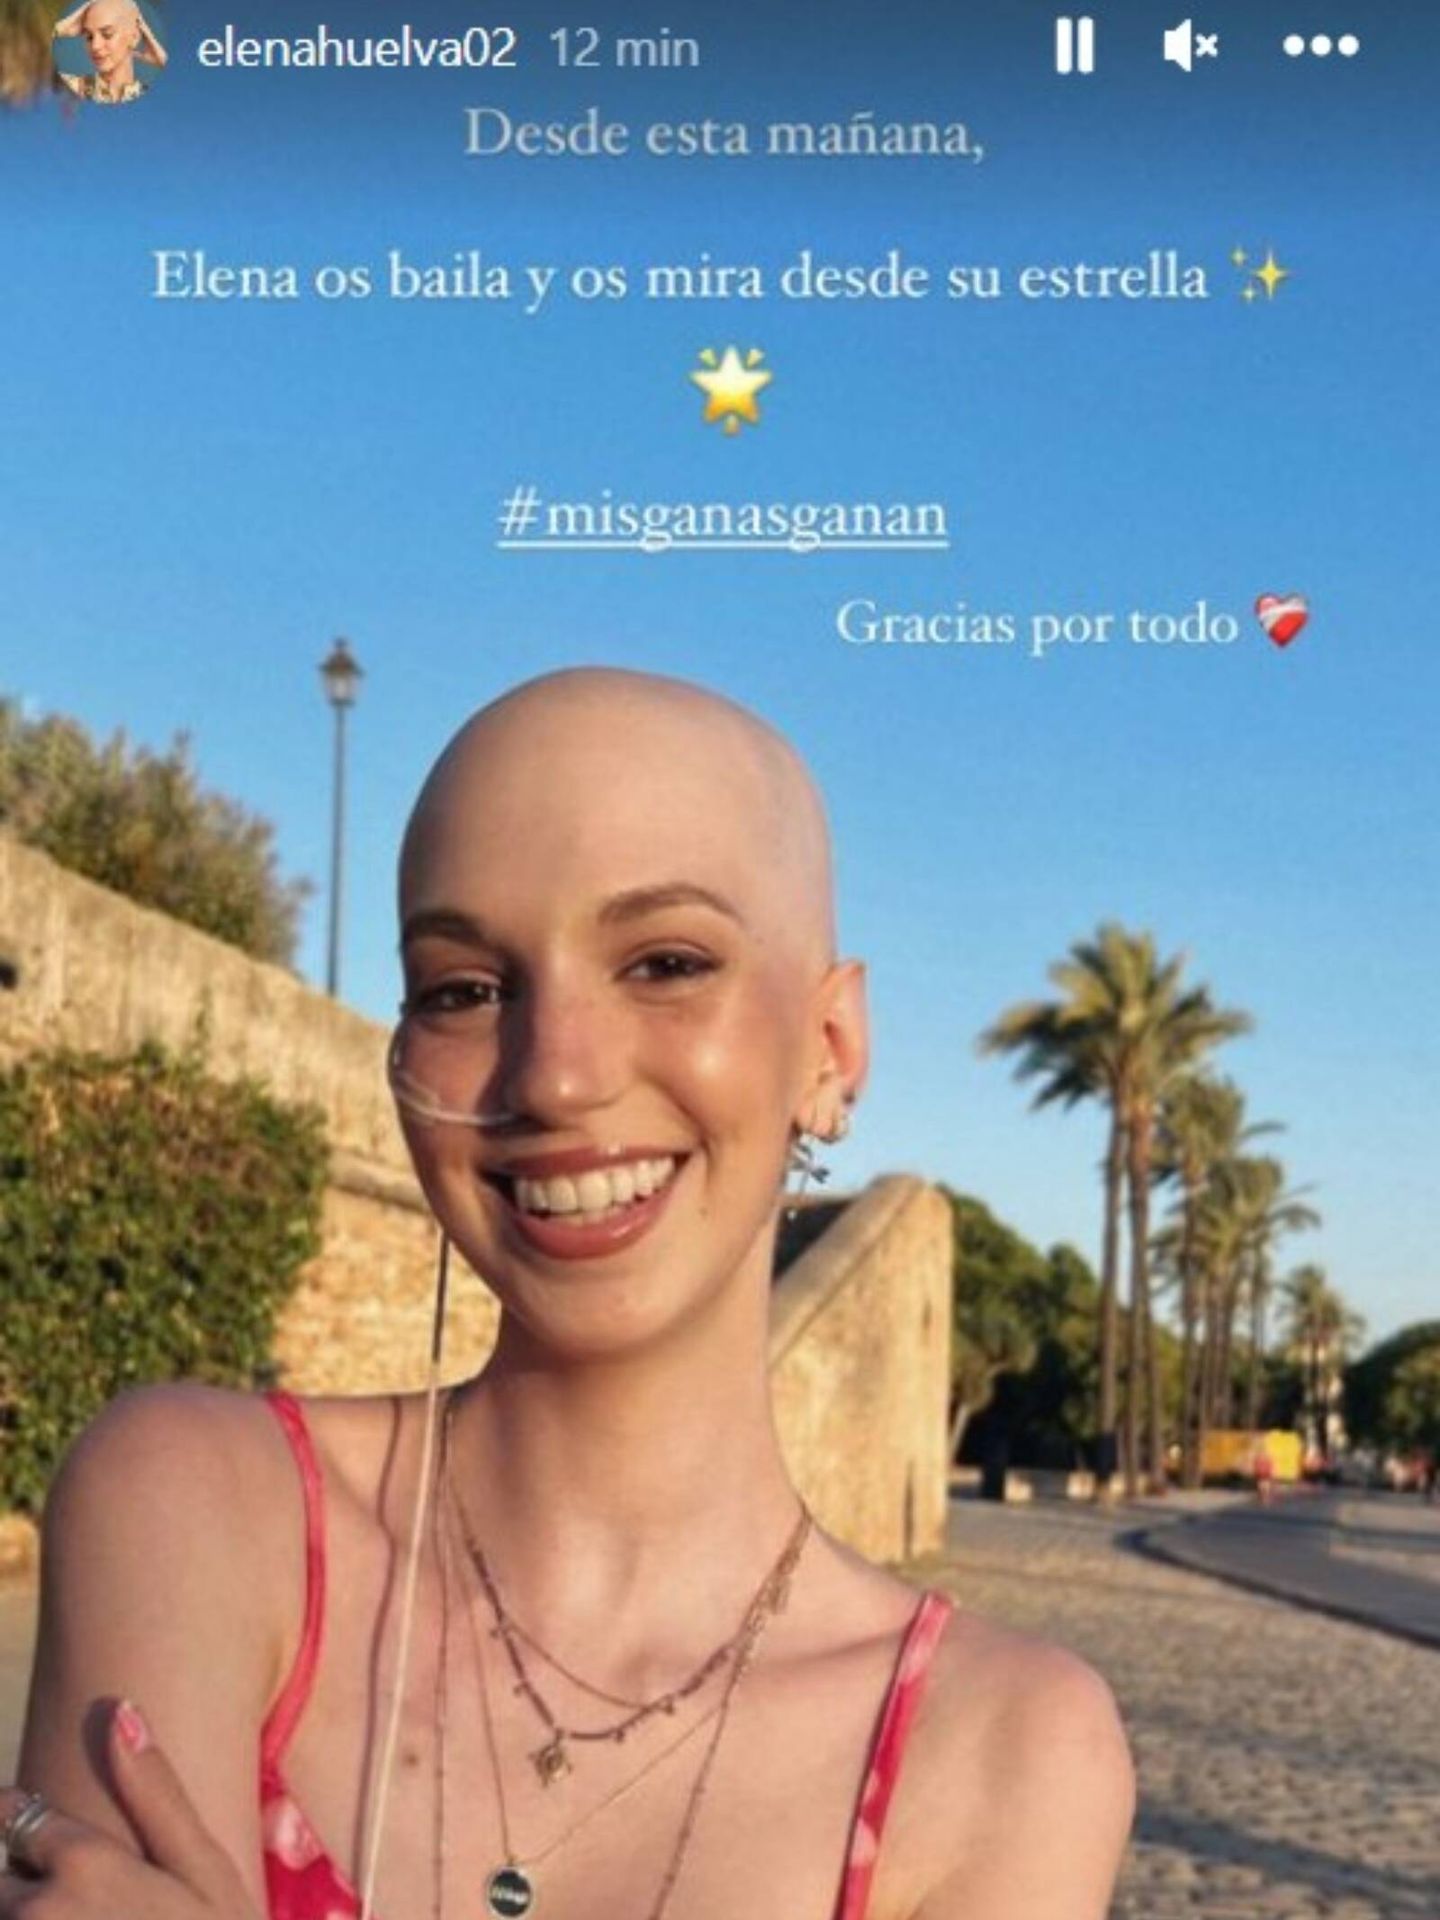 El post con el que la familia de Elena Huelva ha anunciado su fallecimiento. (Instagram/ @elenahuelva02)